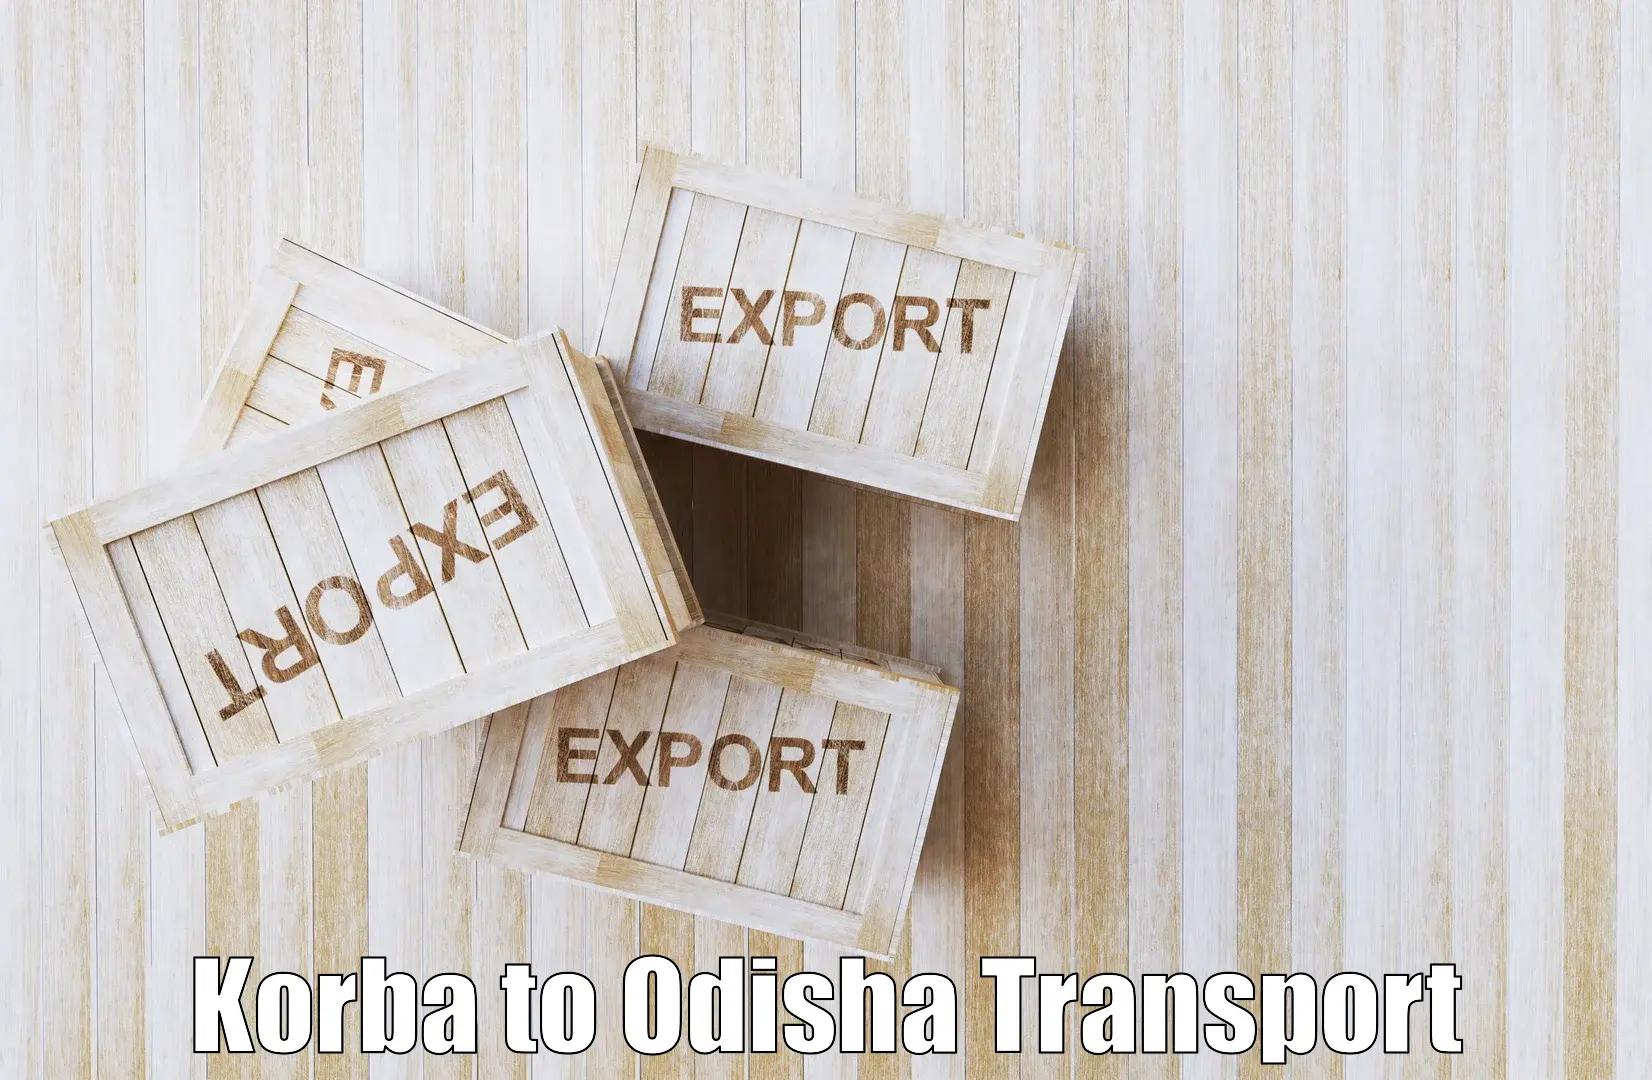 Online transport Korba to Baisinga